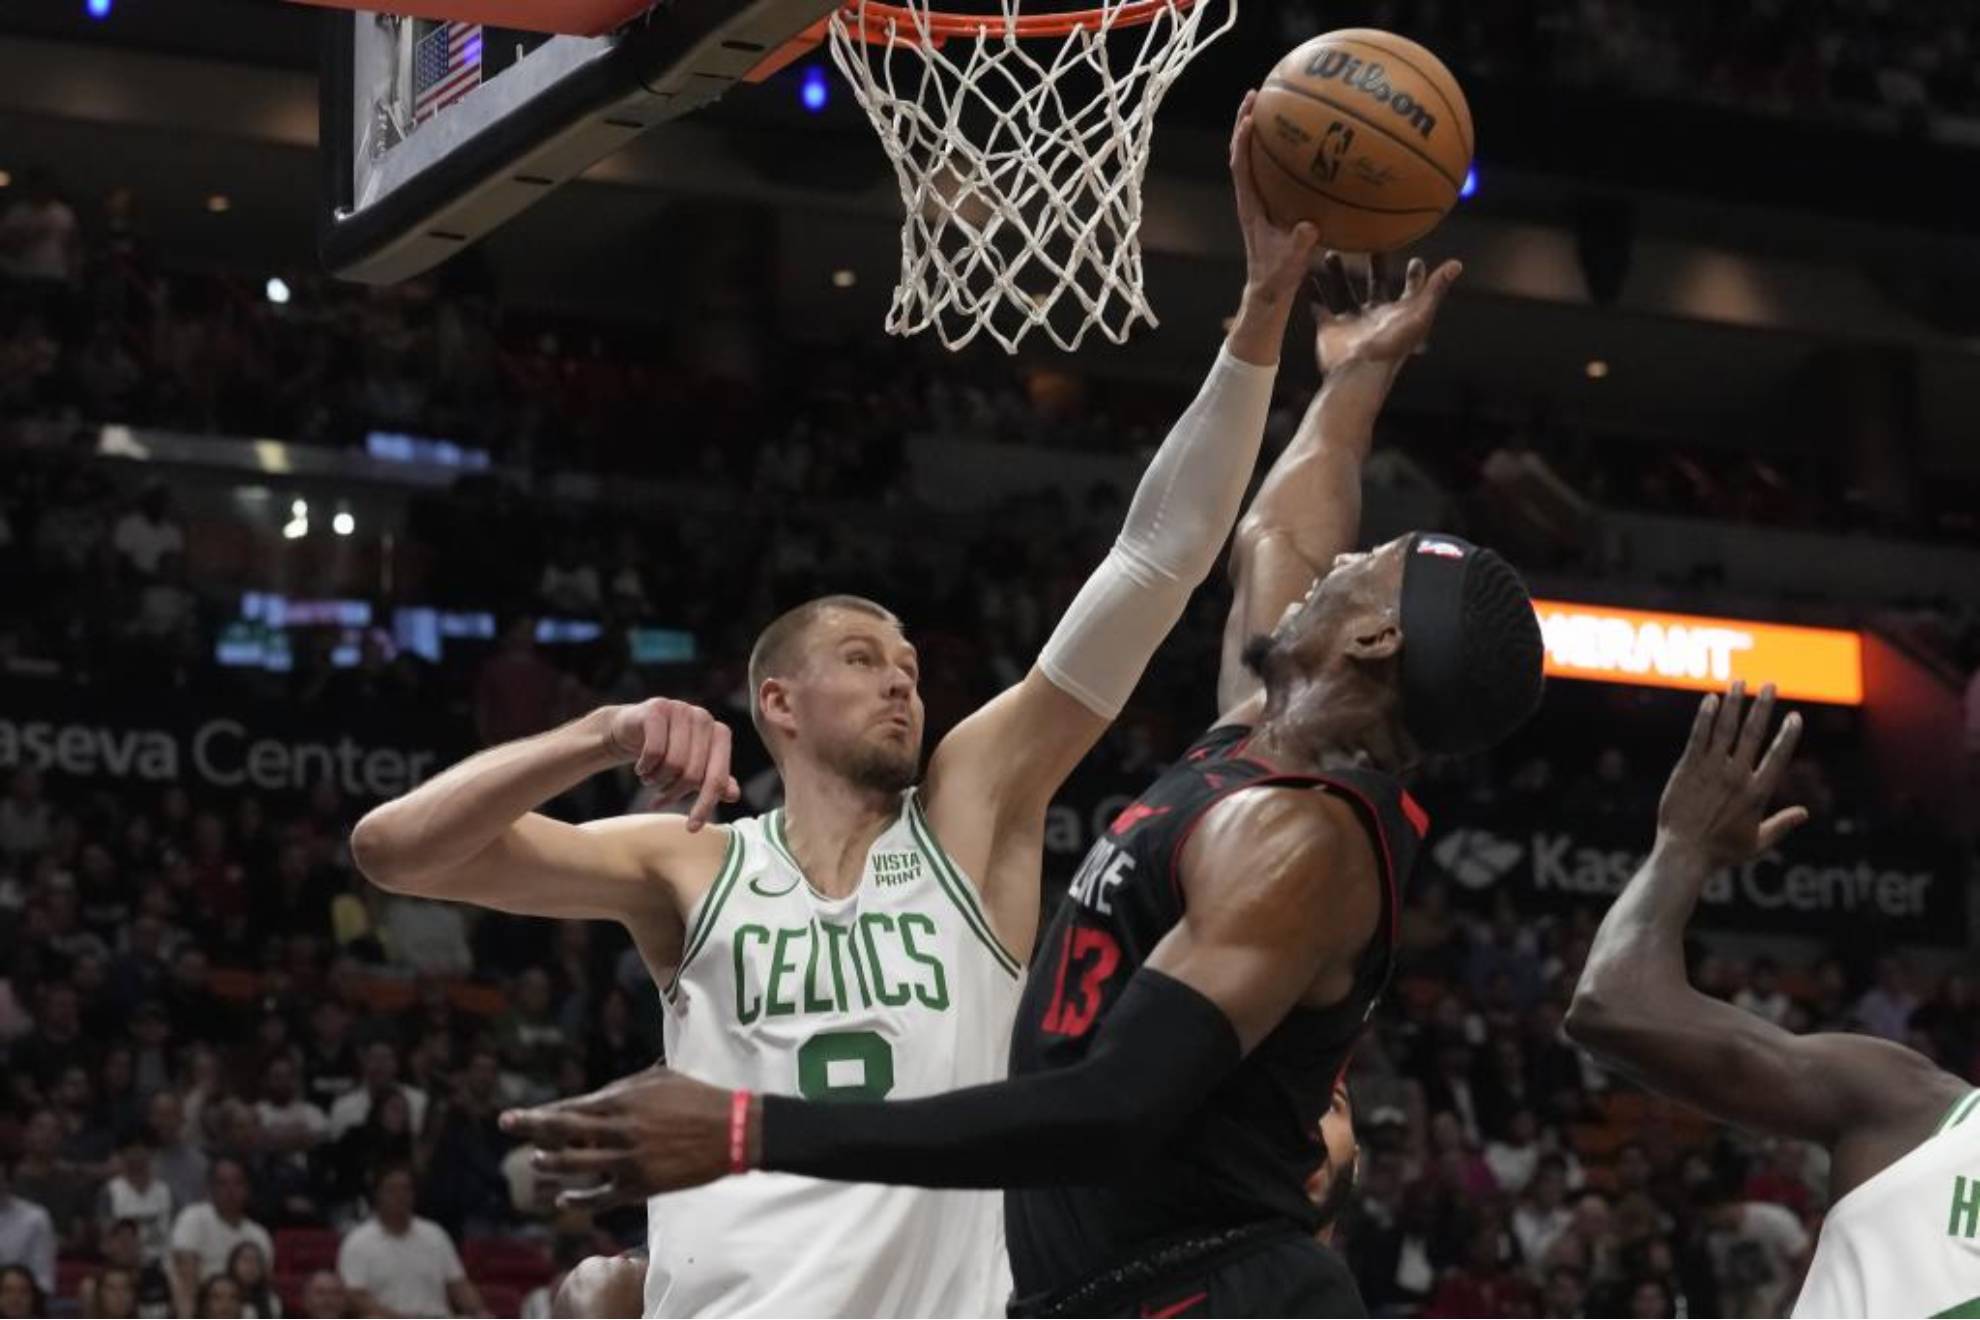 Kristaps Porzingis tapona la bandeja de Bam Adebayo durante el Heat-Celtics.